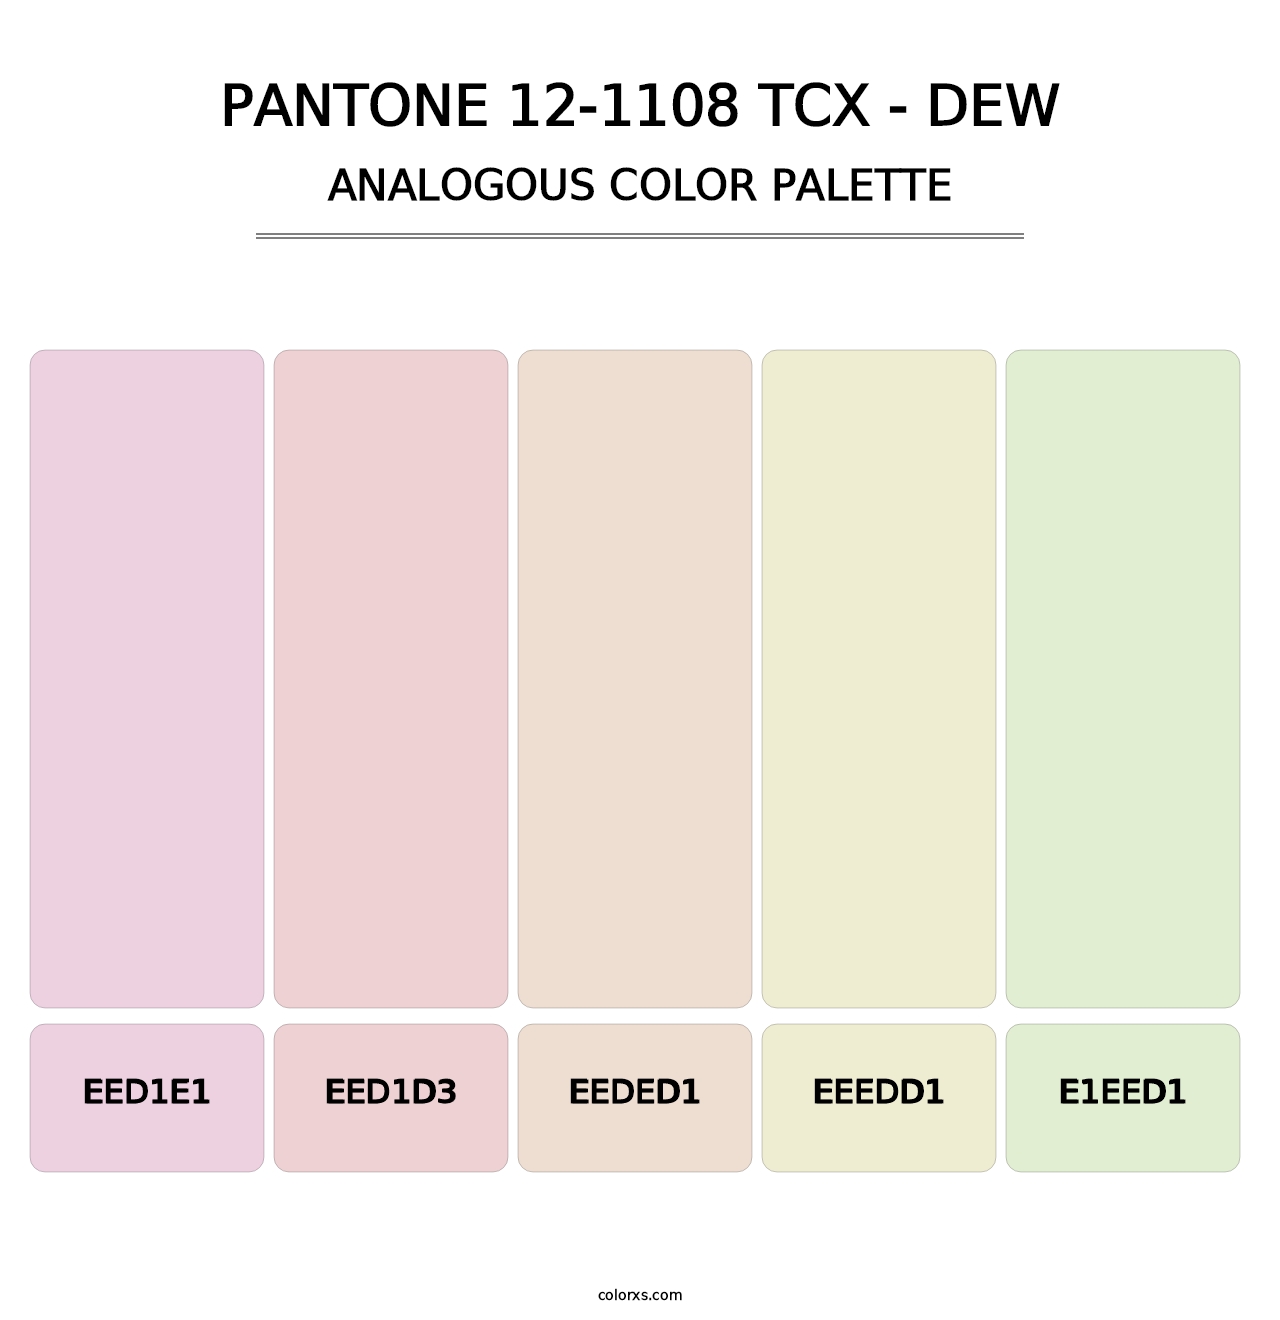 PANTONE 12-1108 TCX - Dew - Analogous Color Palette